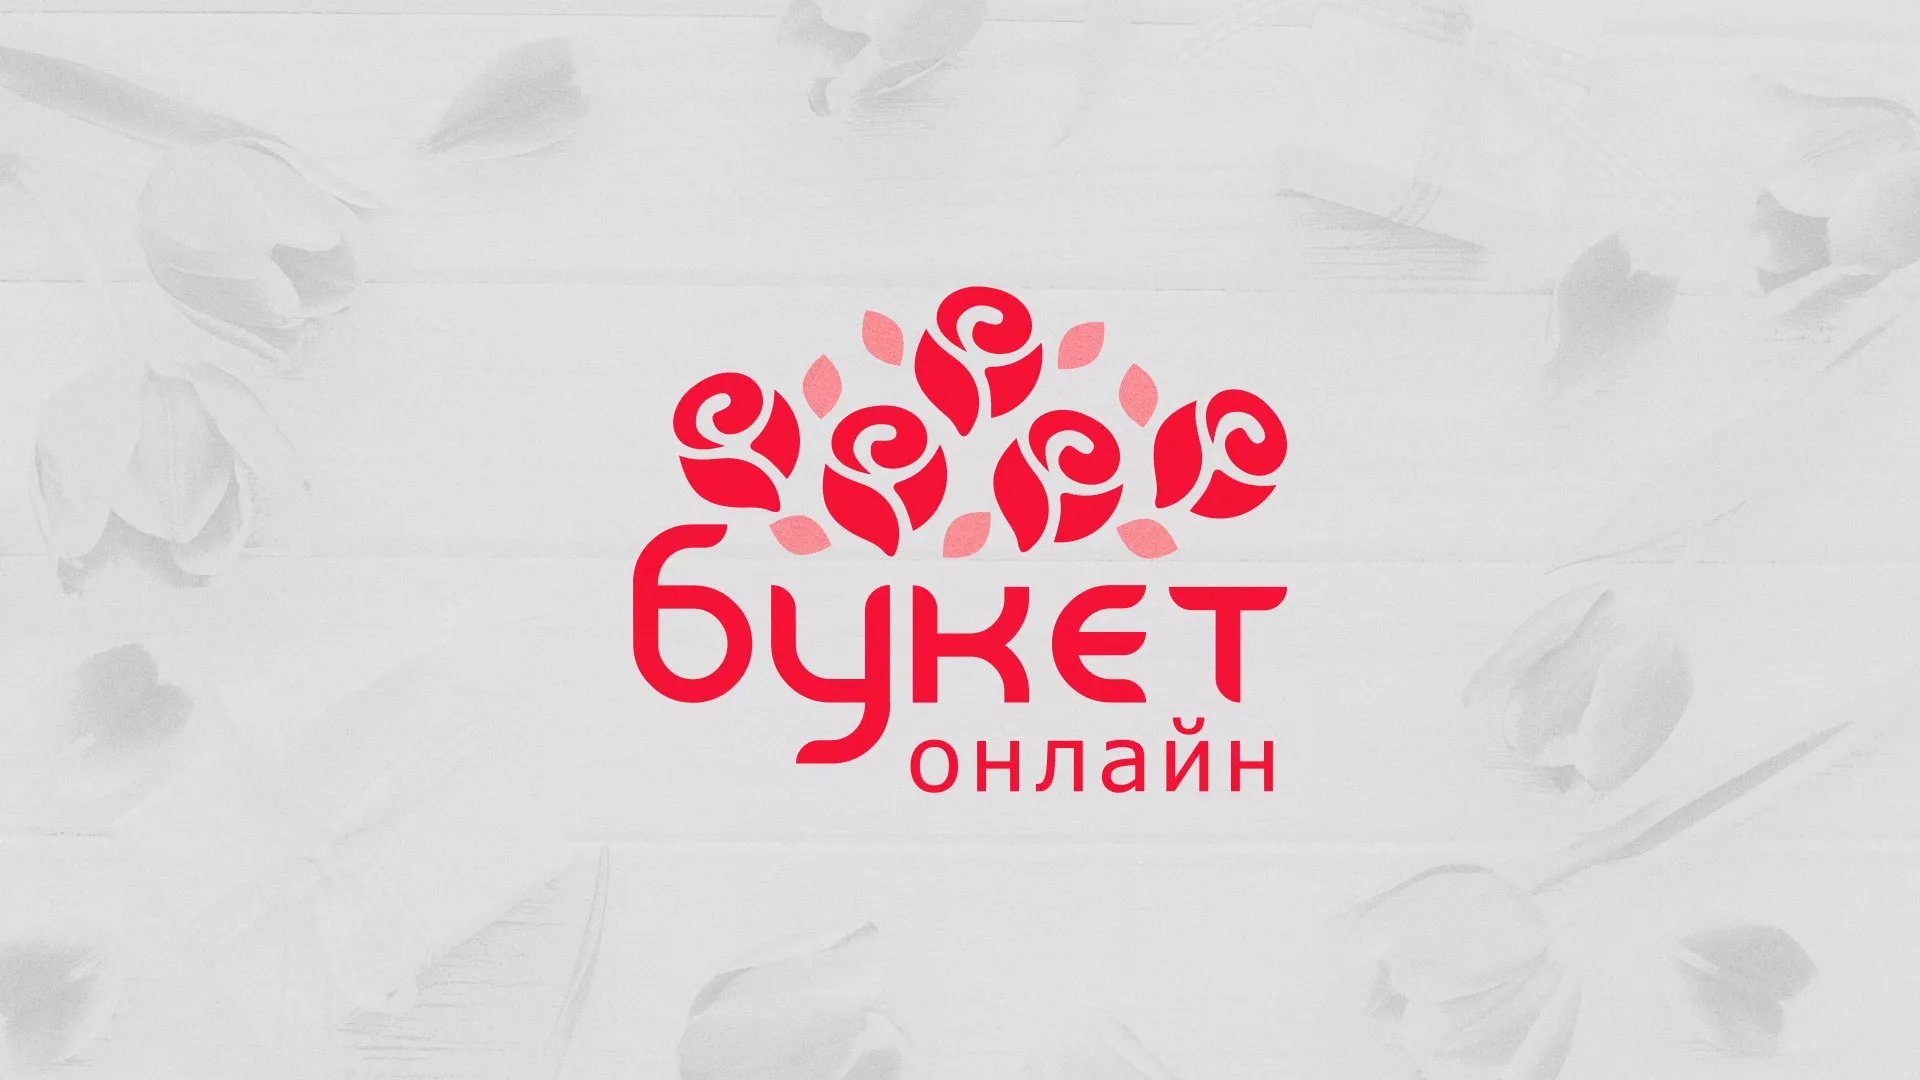 Создание интернет-магазина «Букет-онлайн» по цветам в Киришах